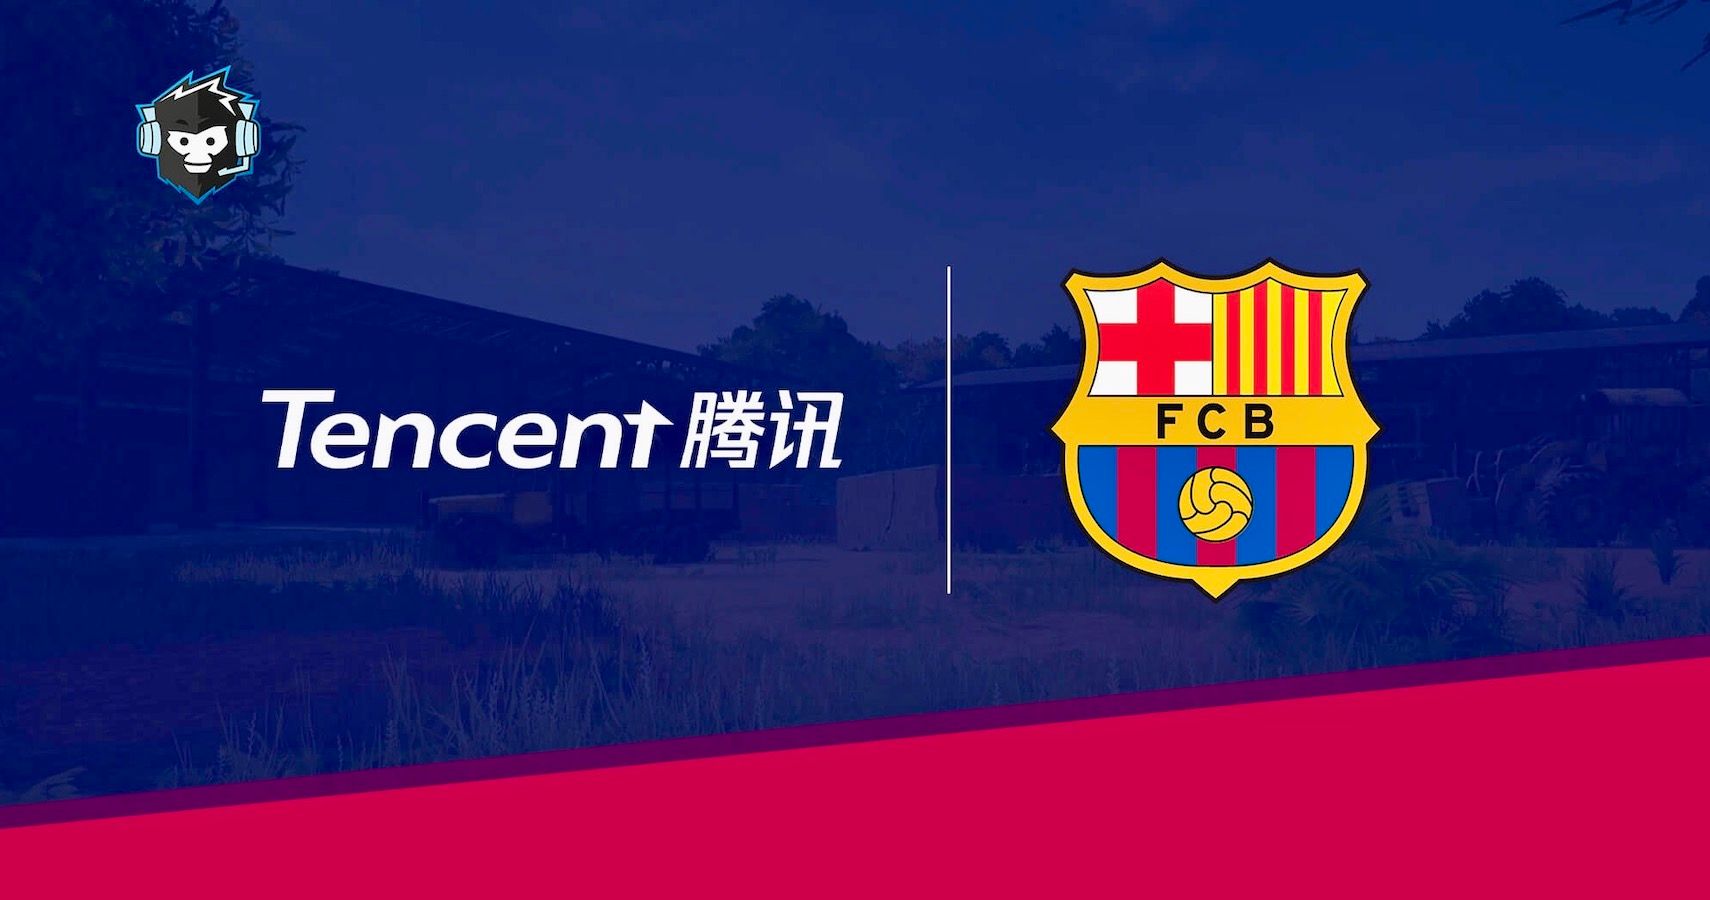 Tencent FCB